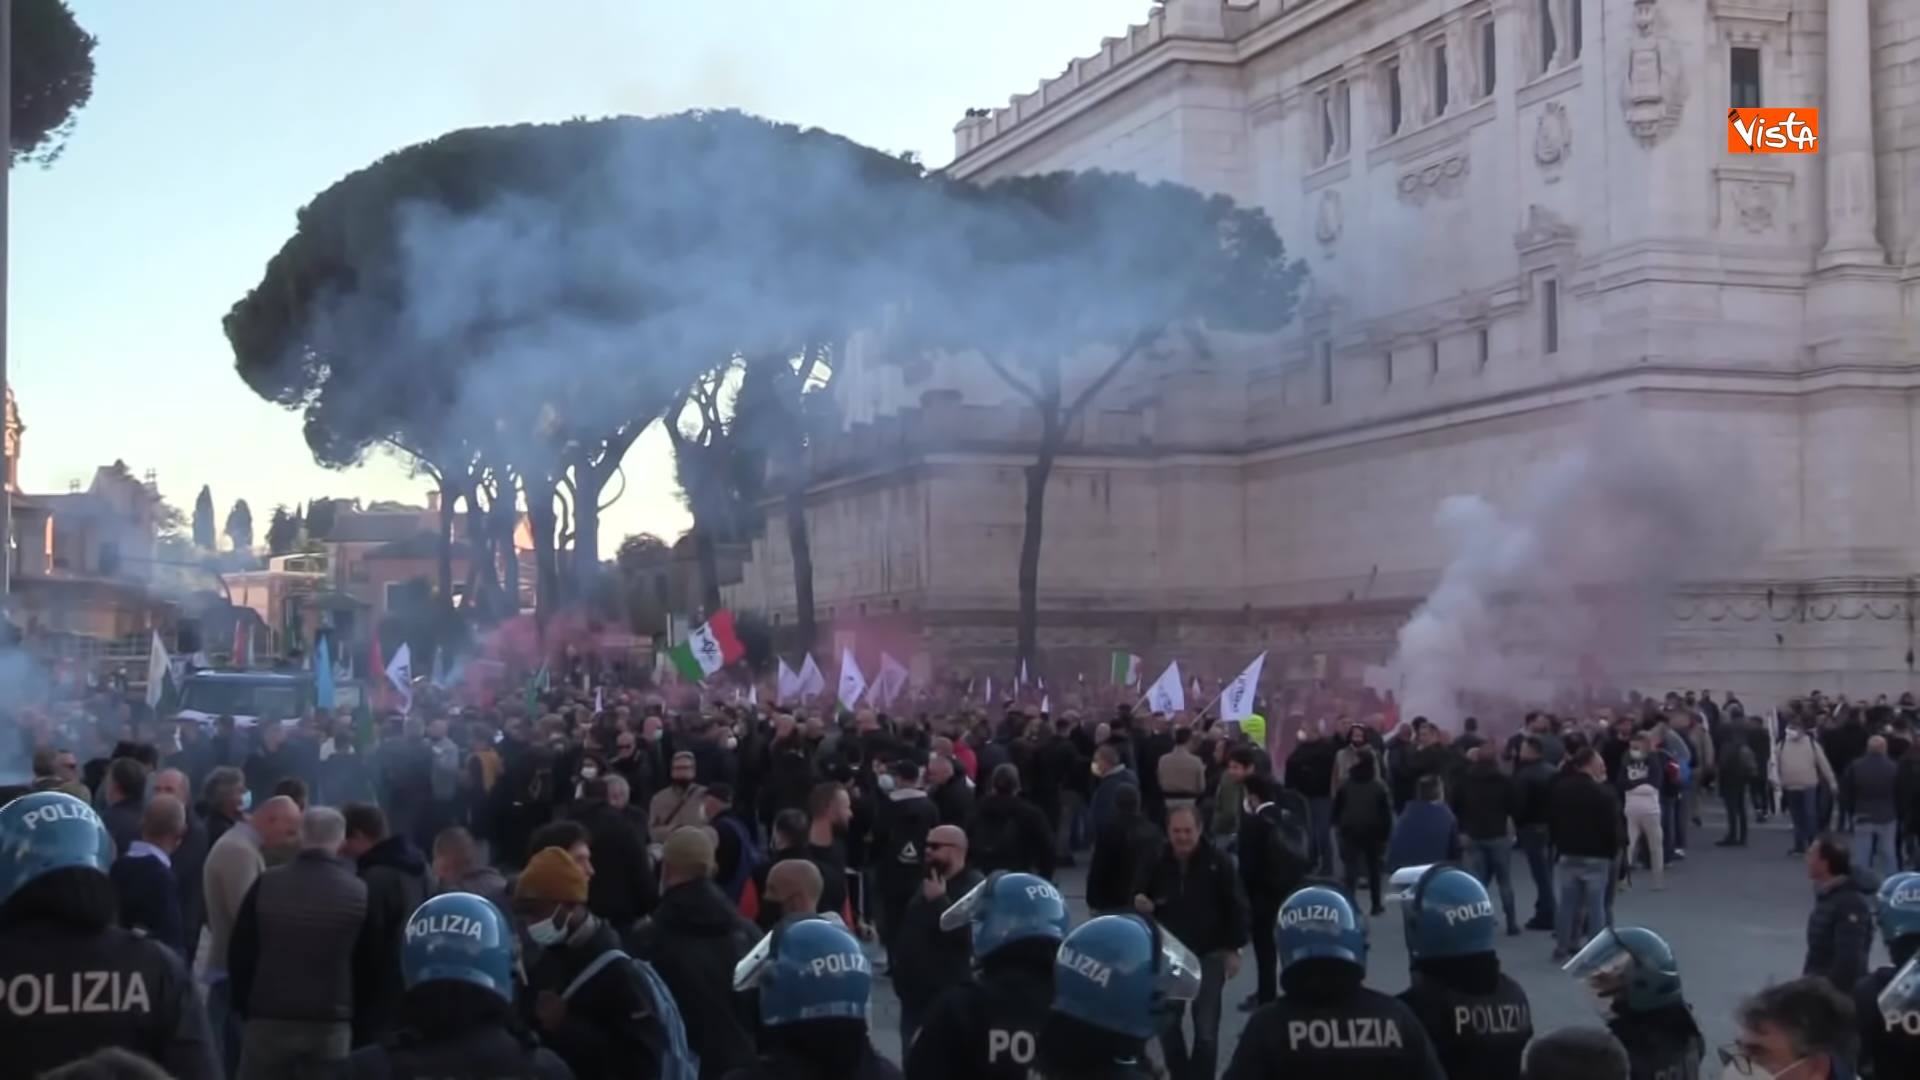 24-11-21 Protesta dei tassisti a Roma contro il Ddl concorrenza le immagini_02